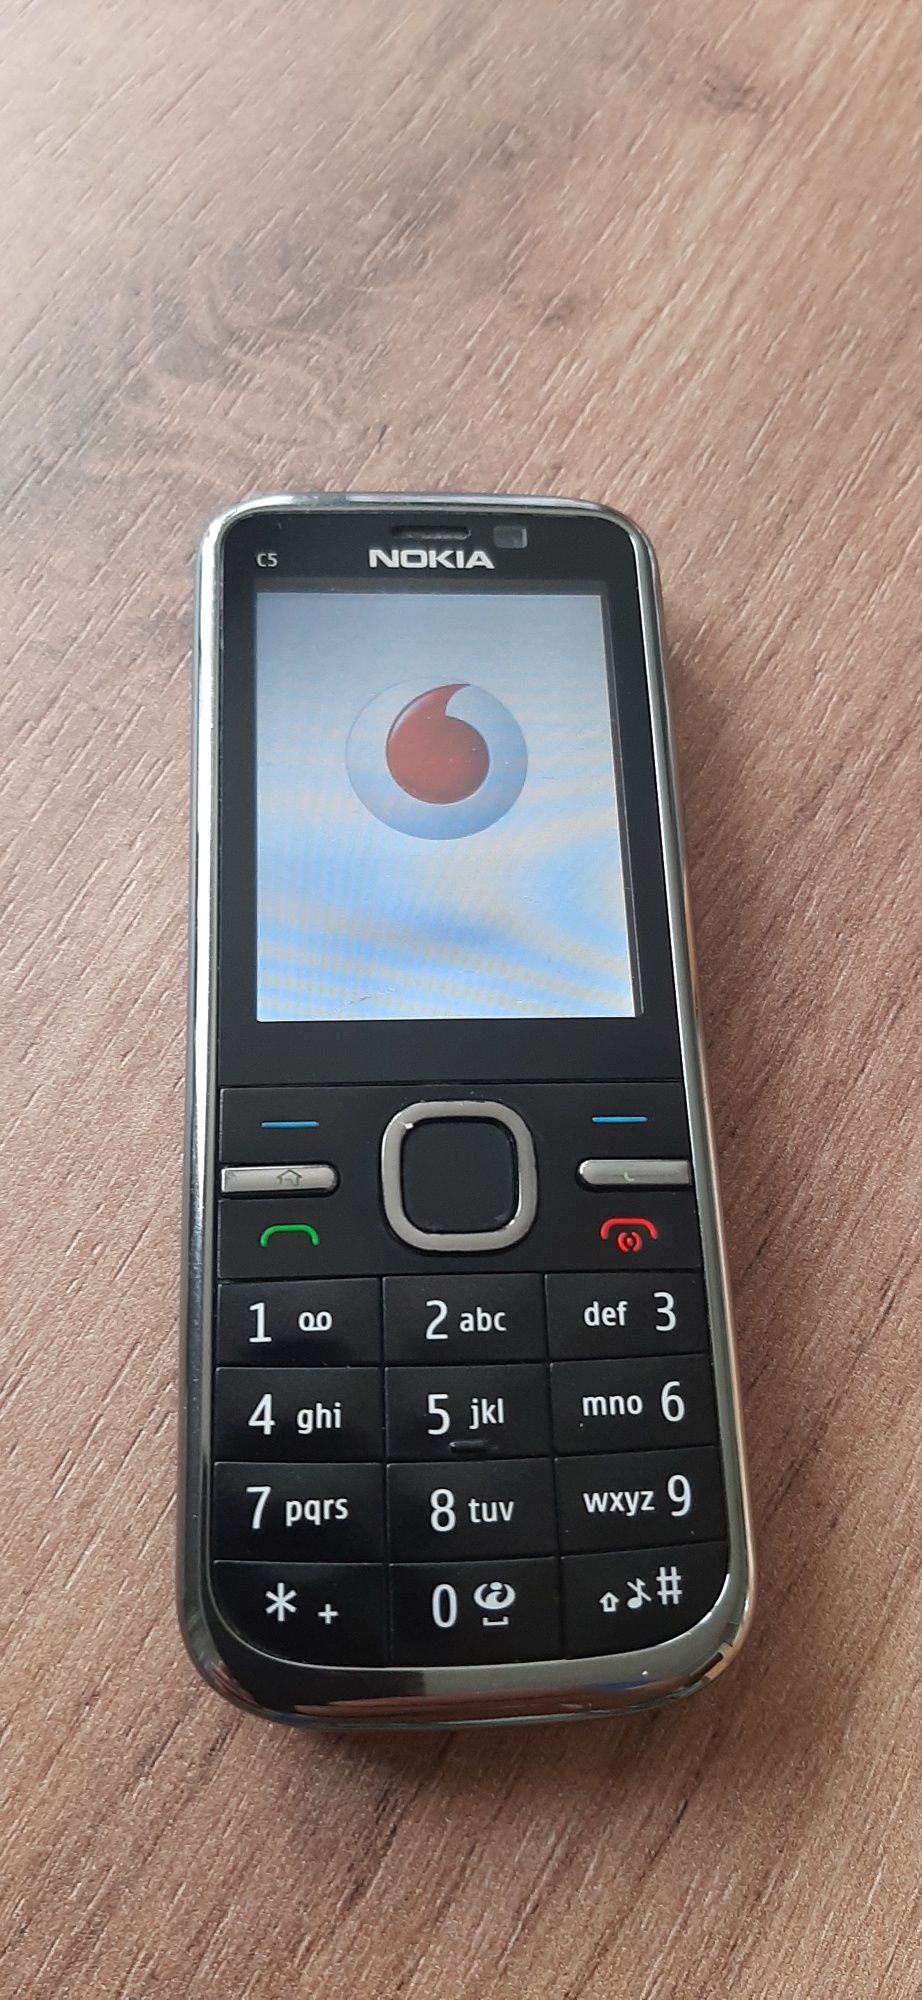 Nokia C 5 00  5mp